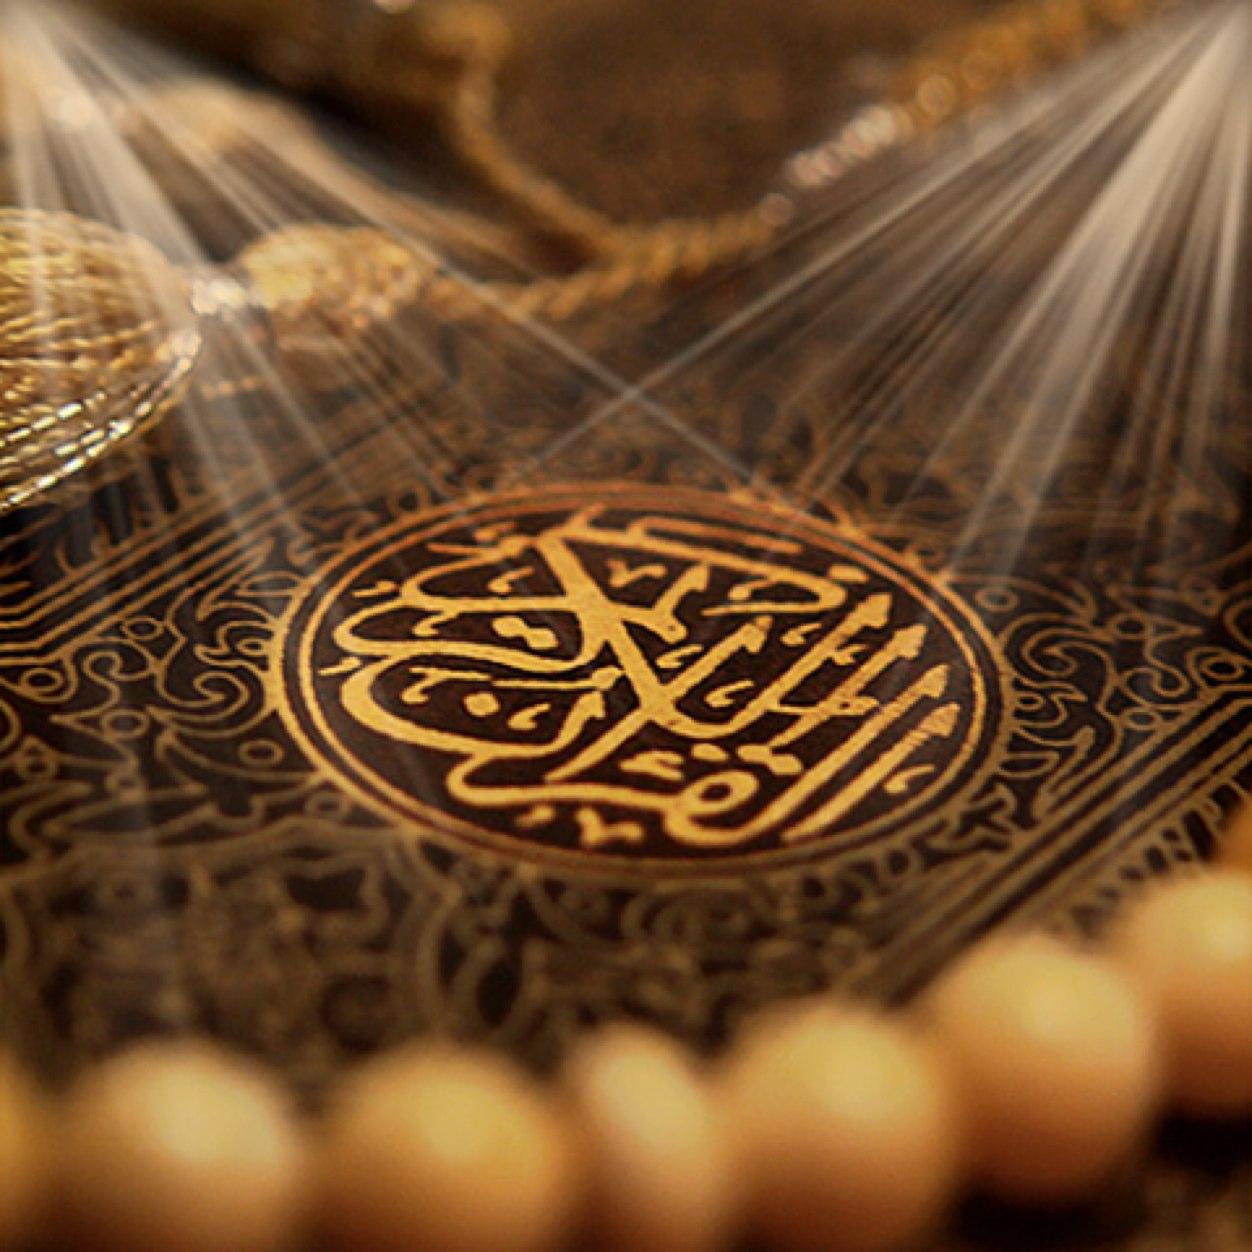 The noble quran   القرآن الكريم